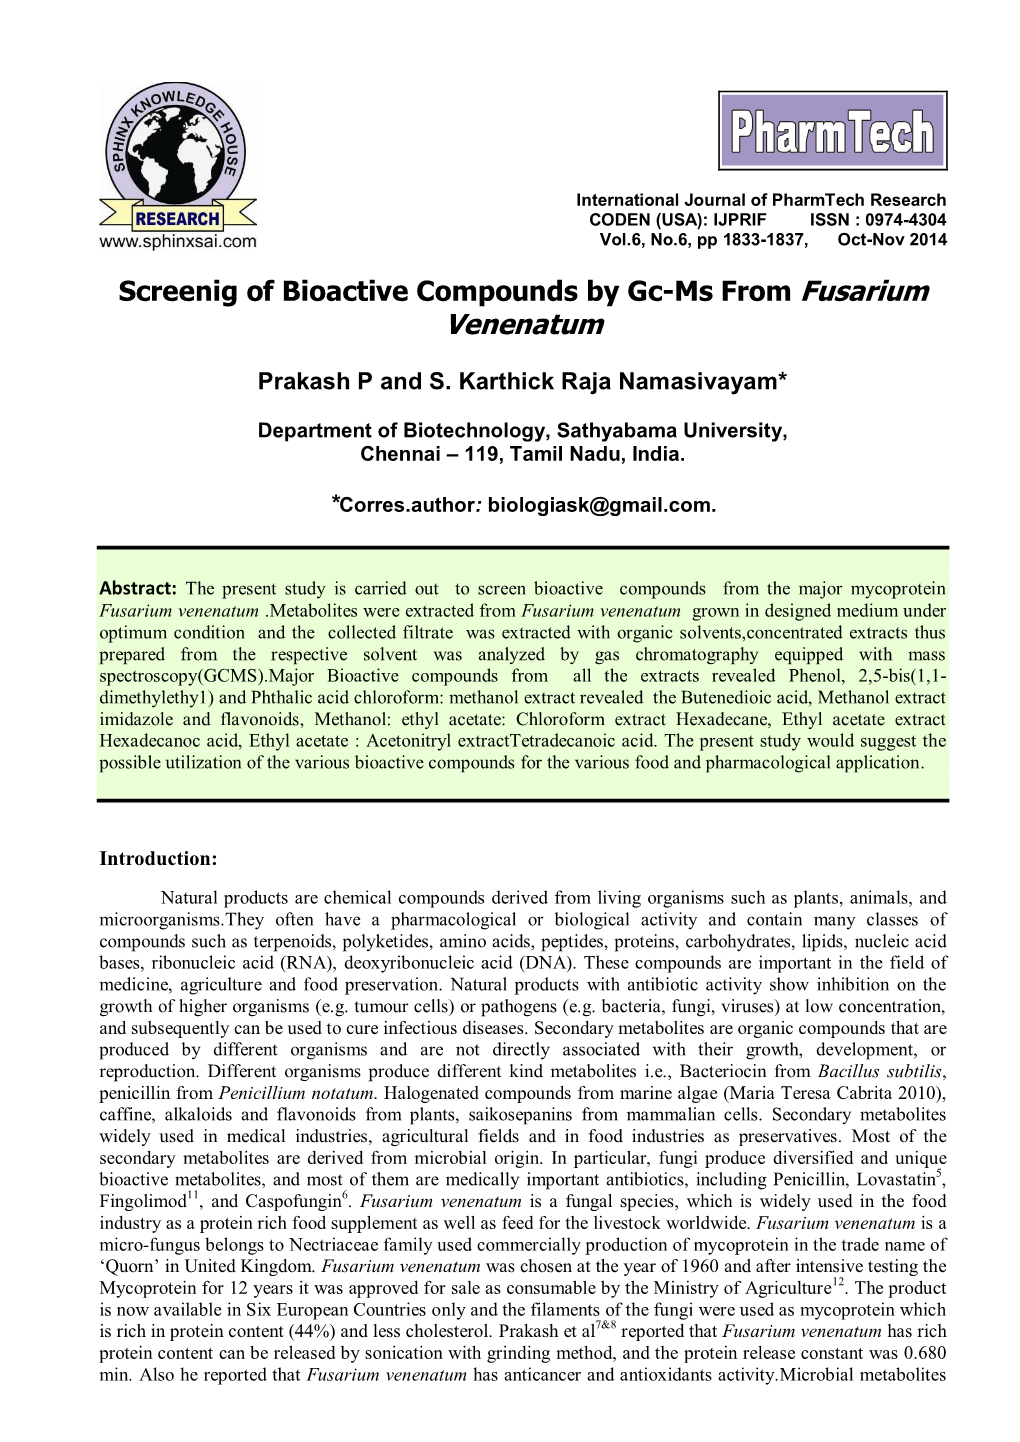 Screenig of Bioactive Compounds by Gc-Ms from Fusarium Venenatum